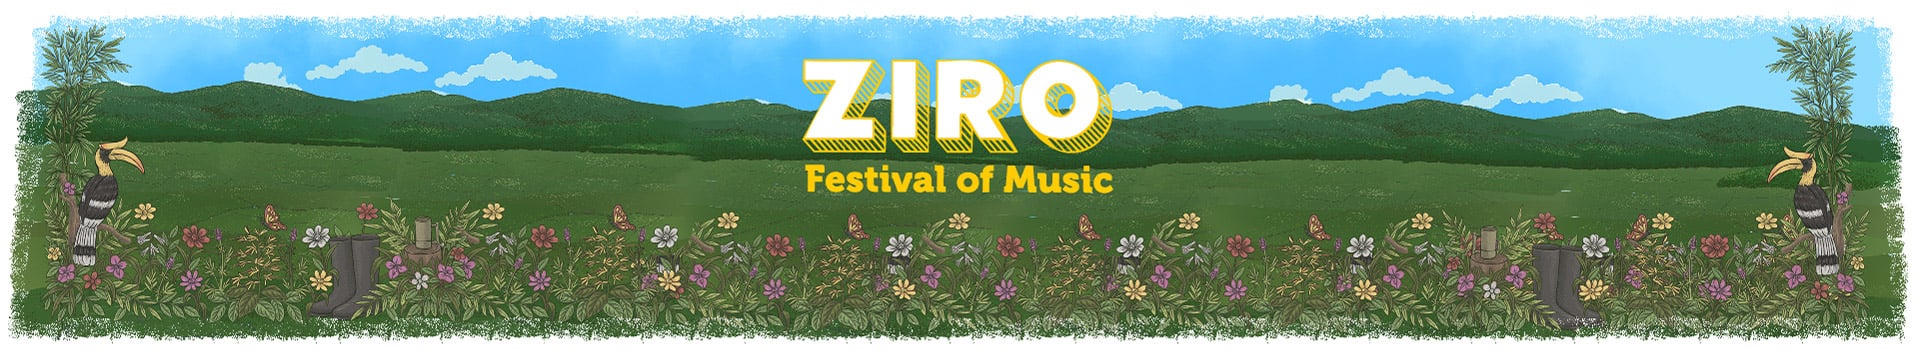 Ziro Festival Of Music